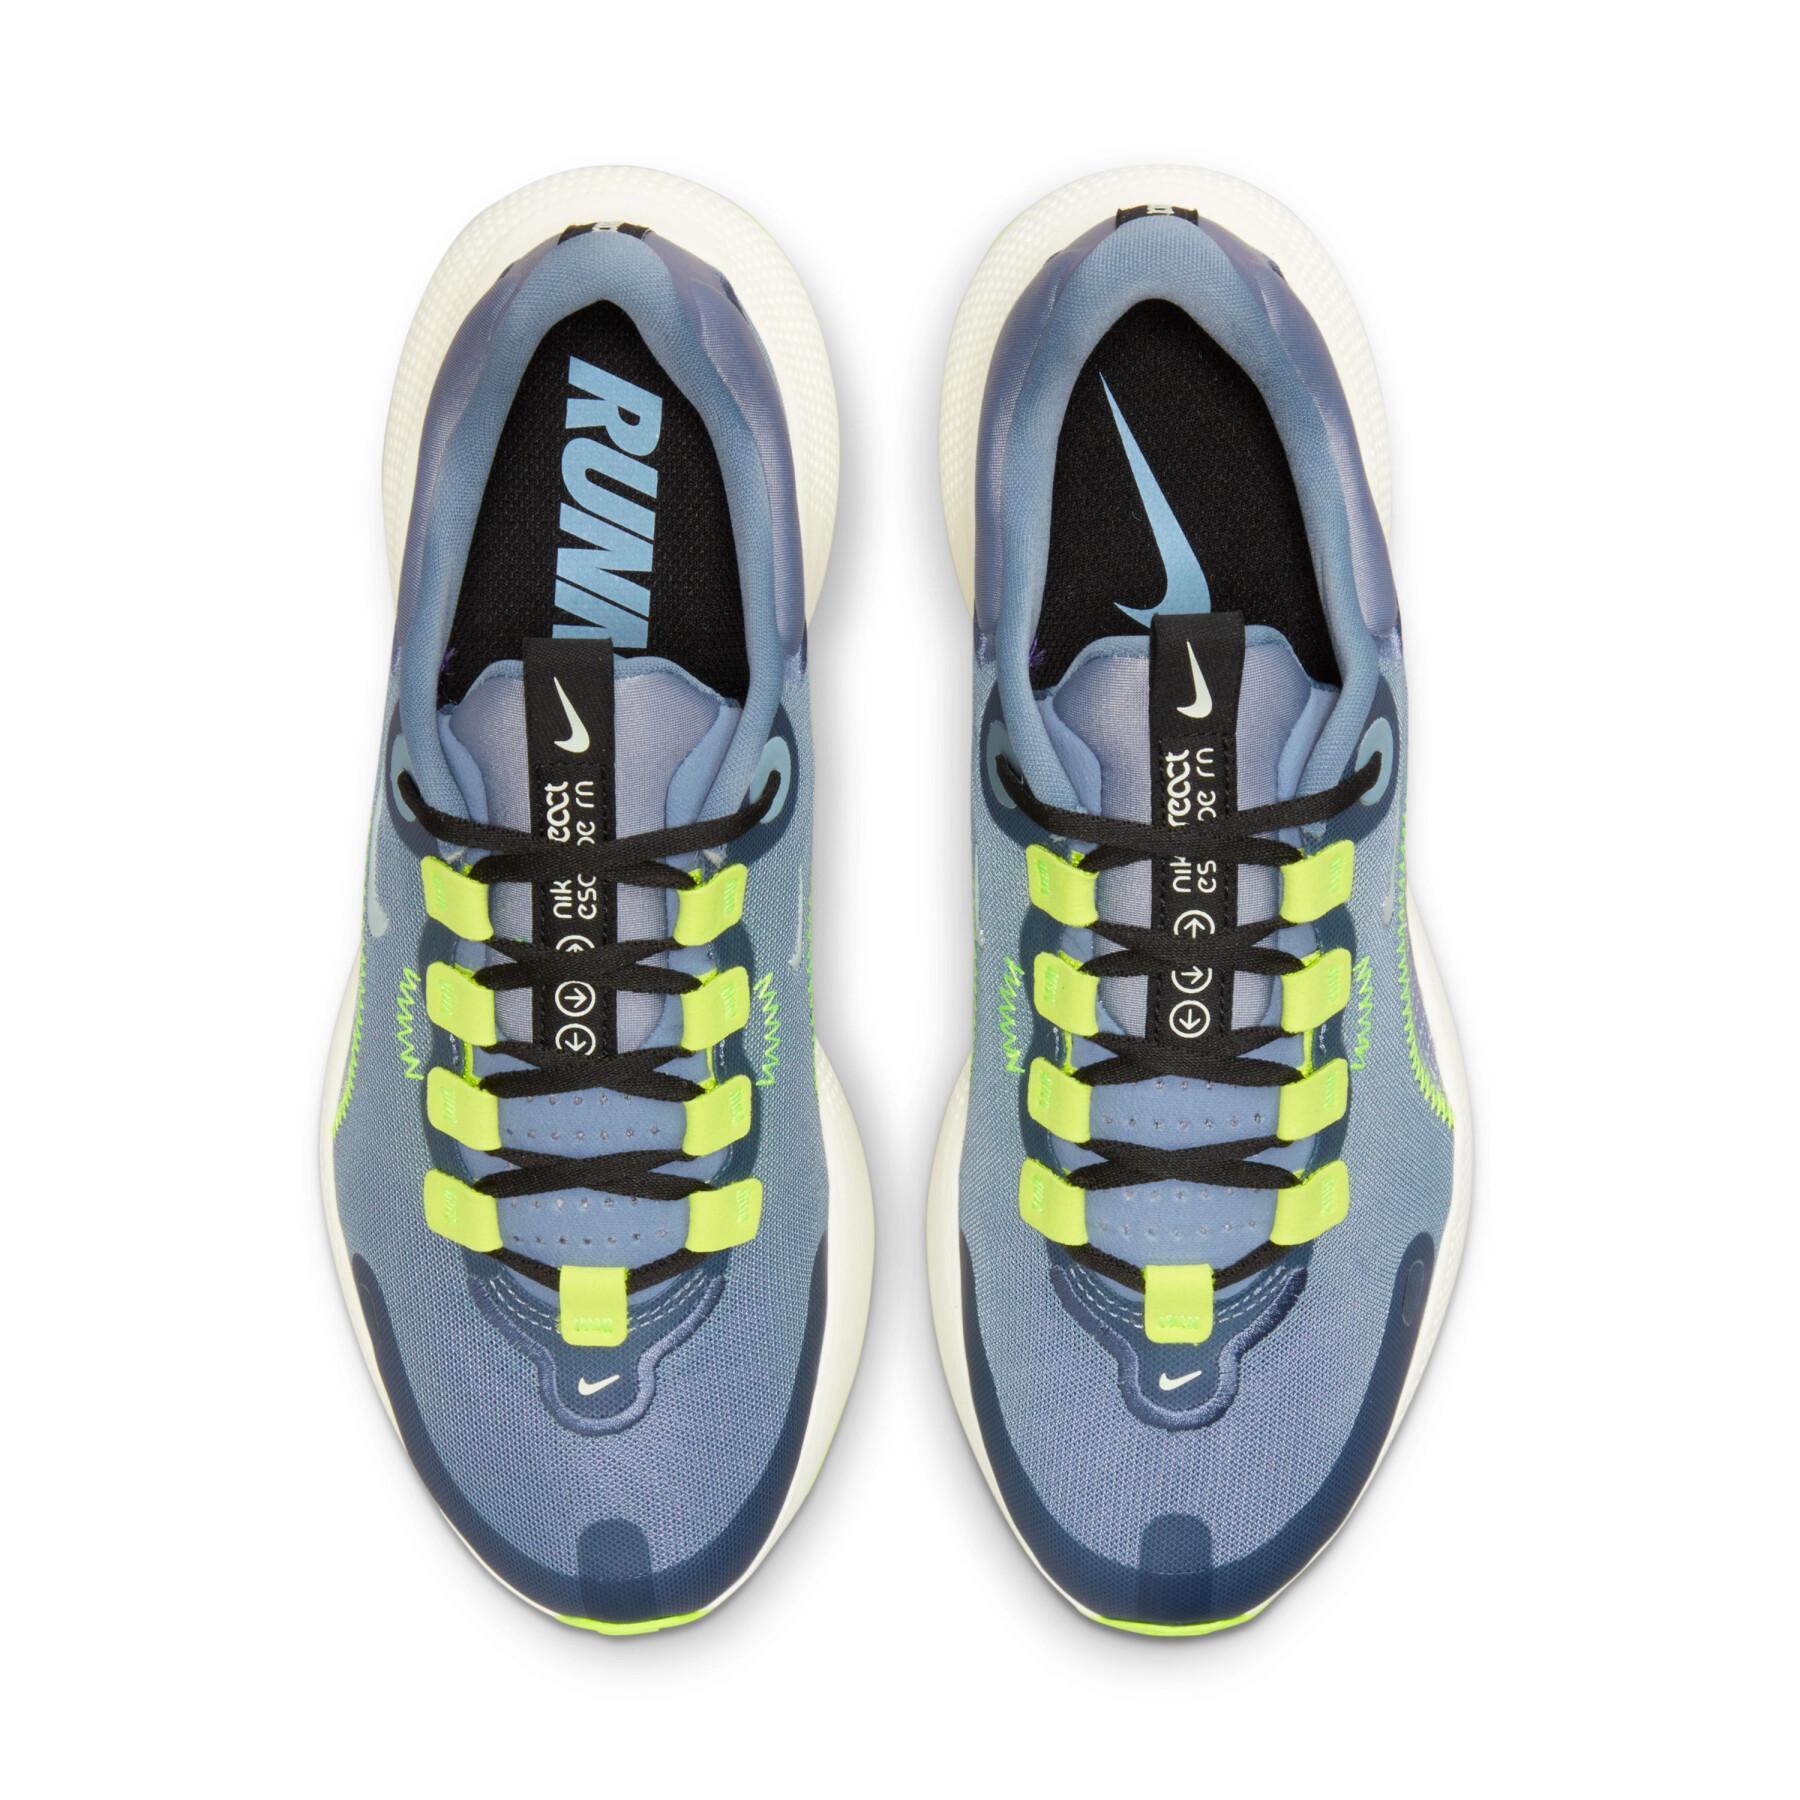 Chaussures de running femme Nike Escape Run